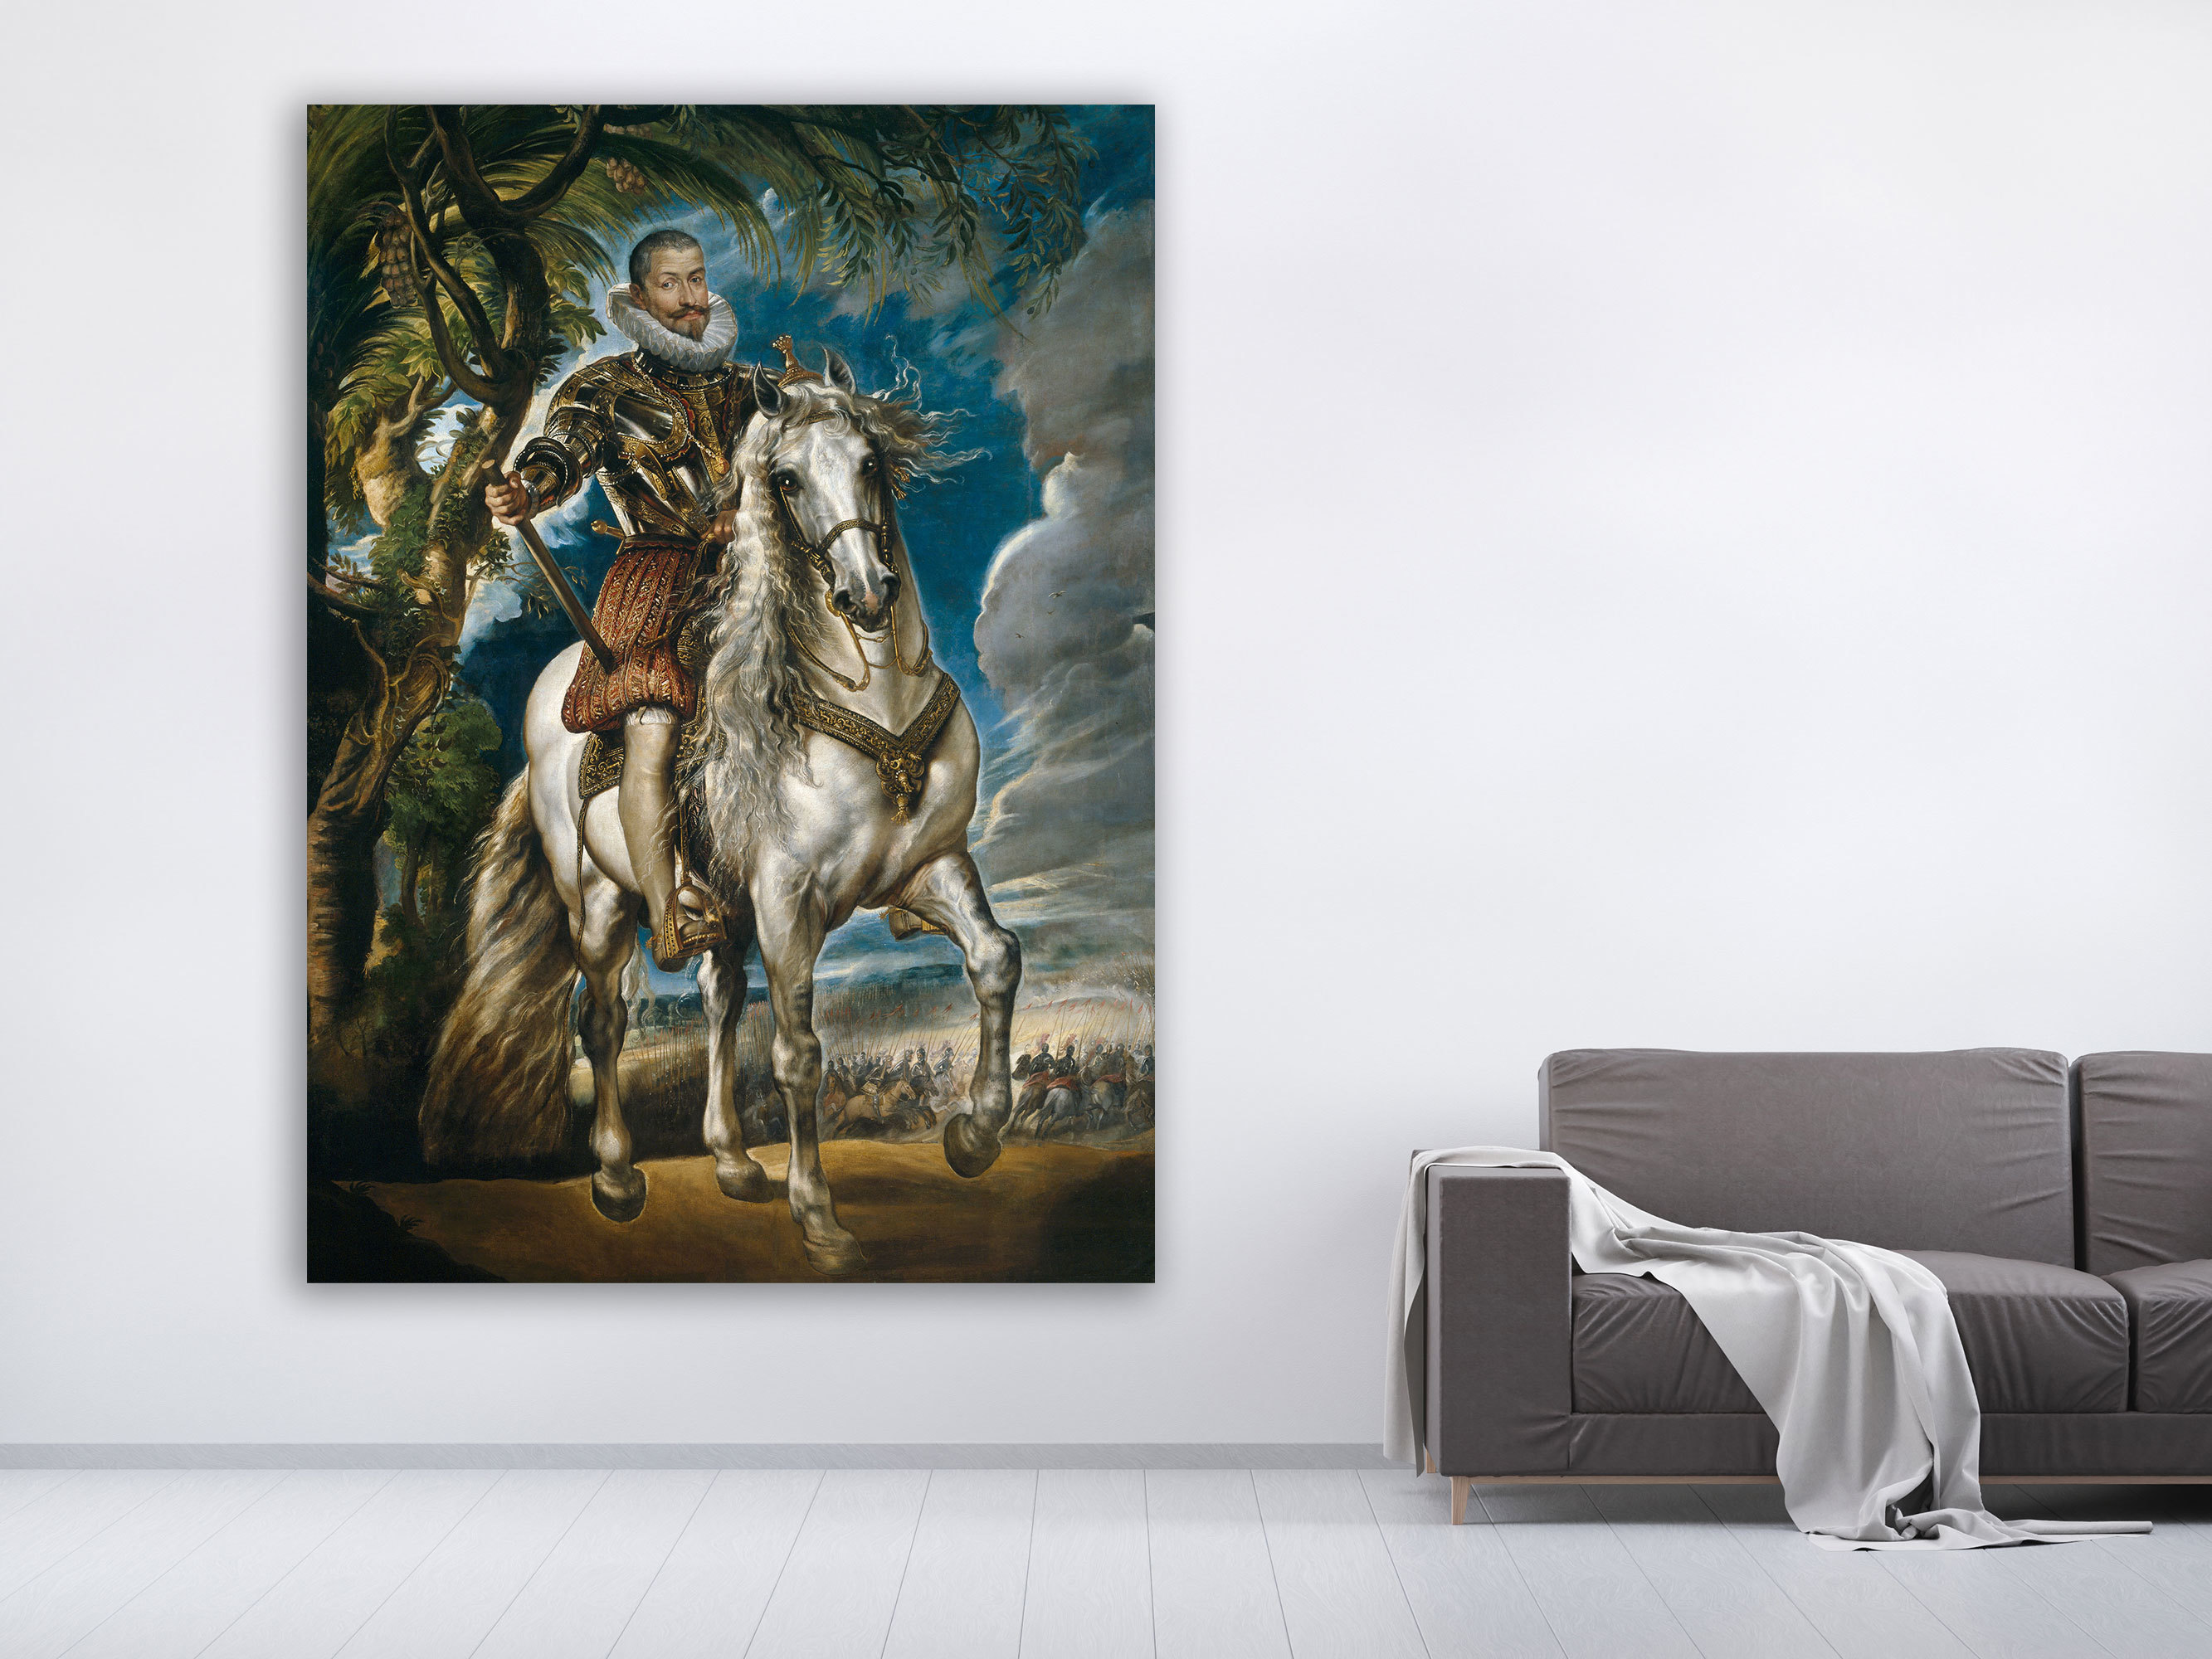 Peter Paul Rubens – Porträt vom Herzog von Lerma